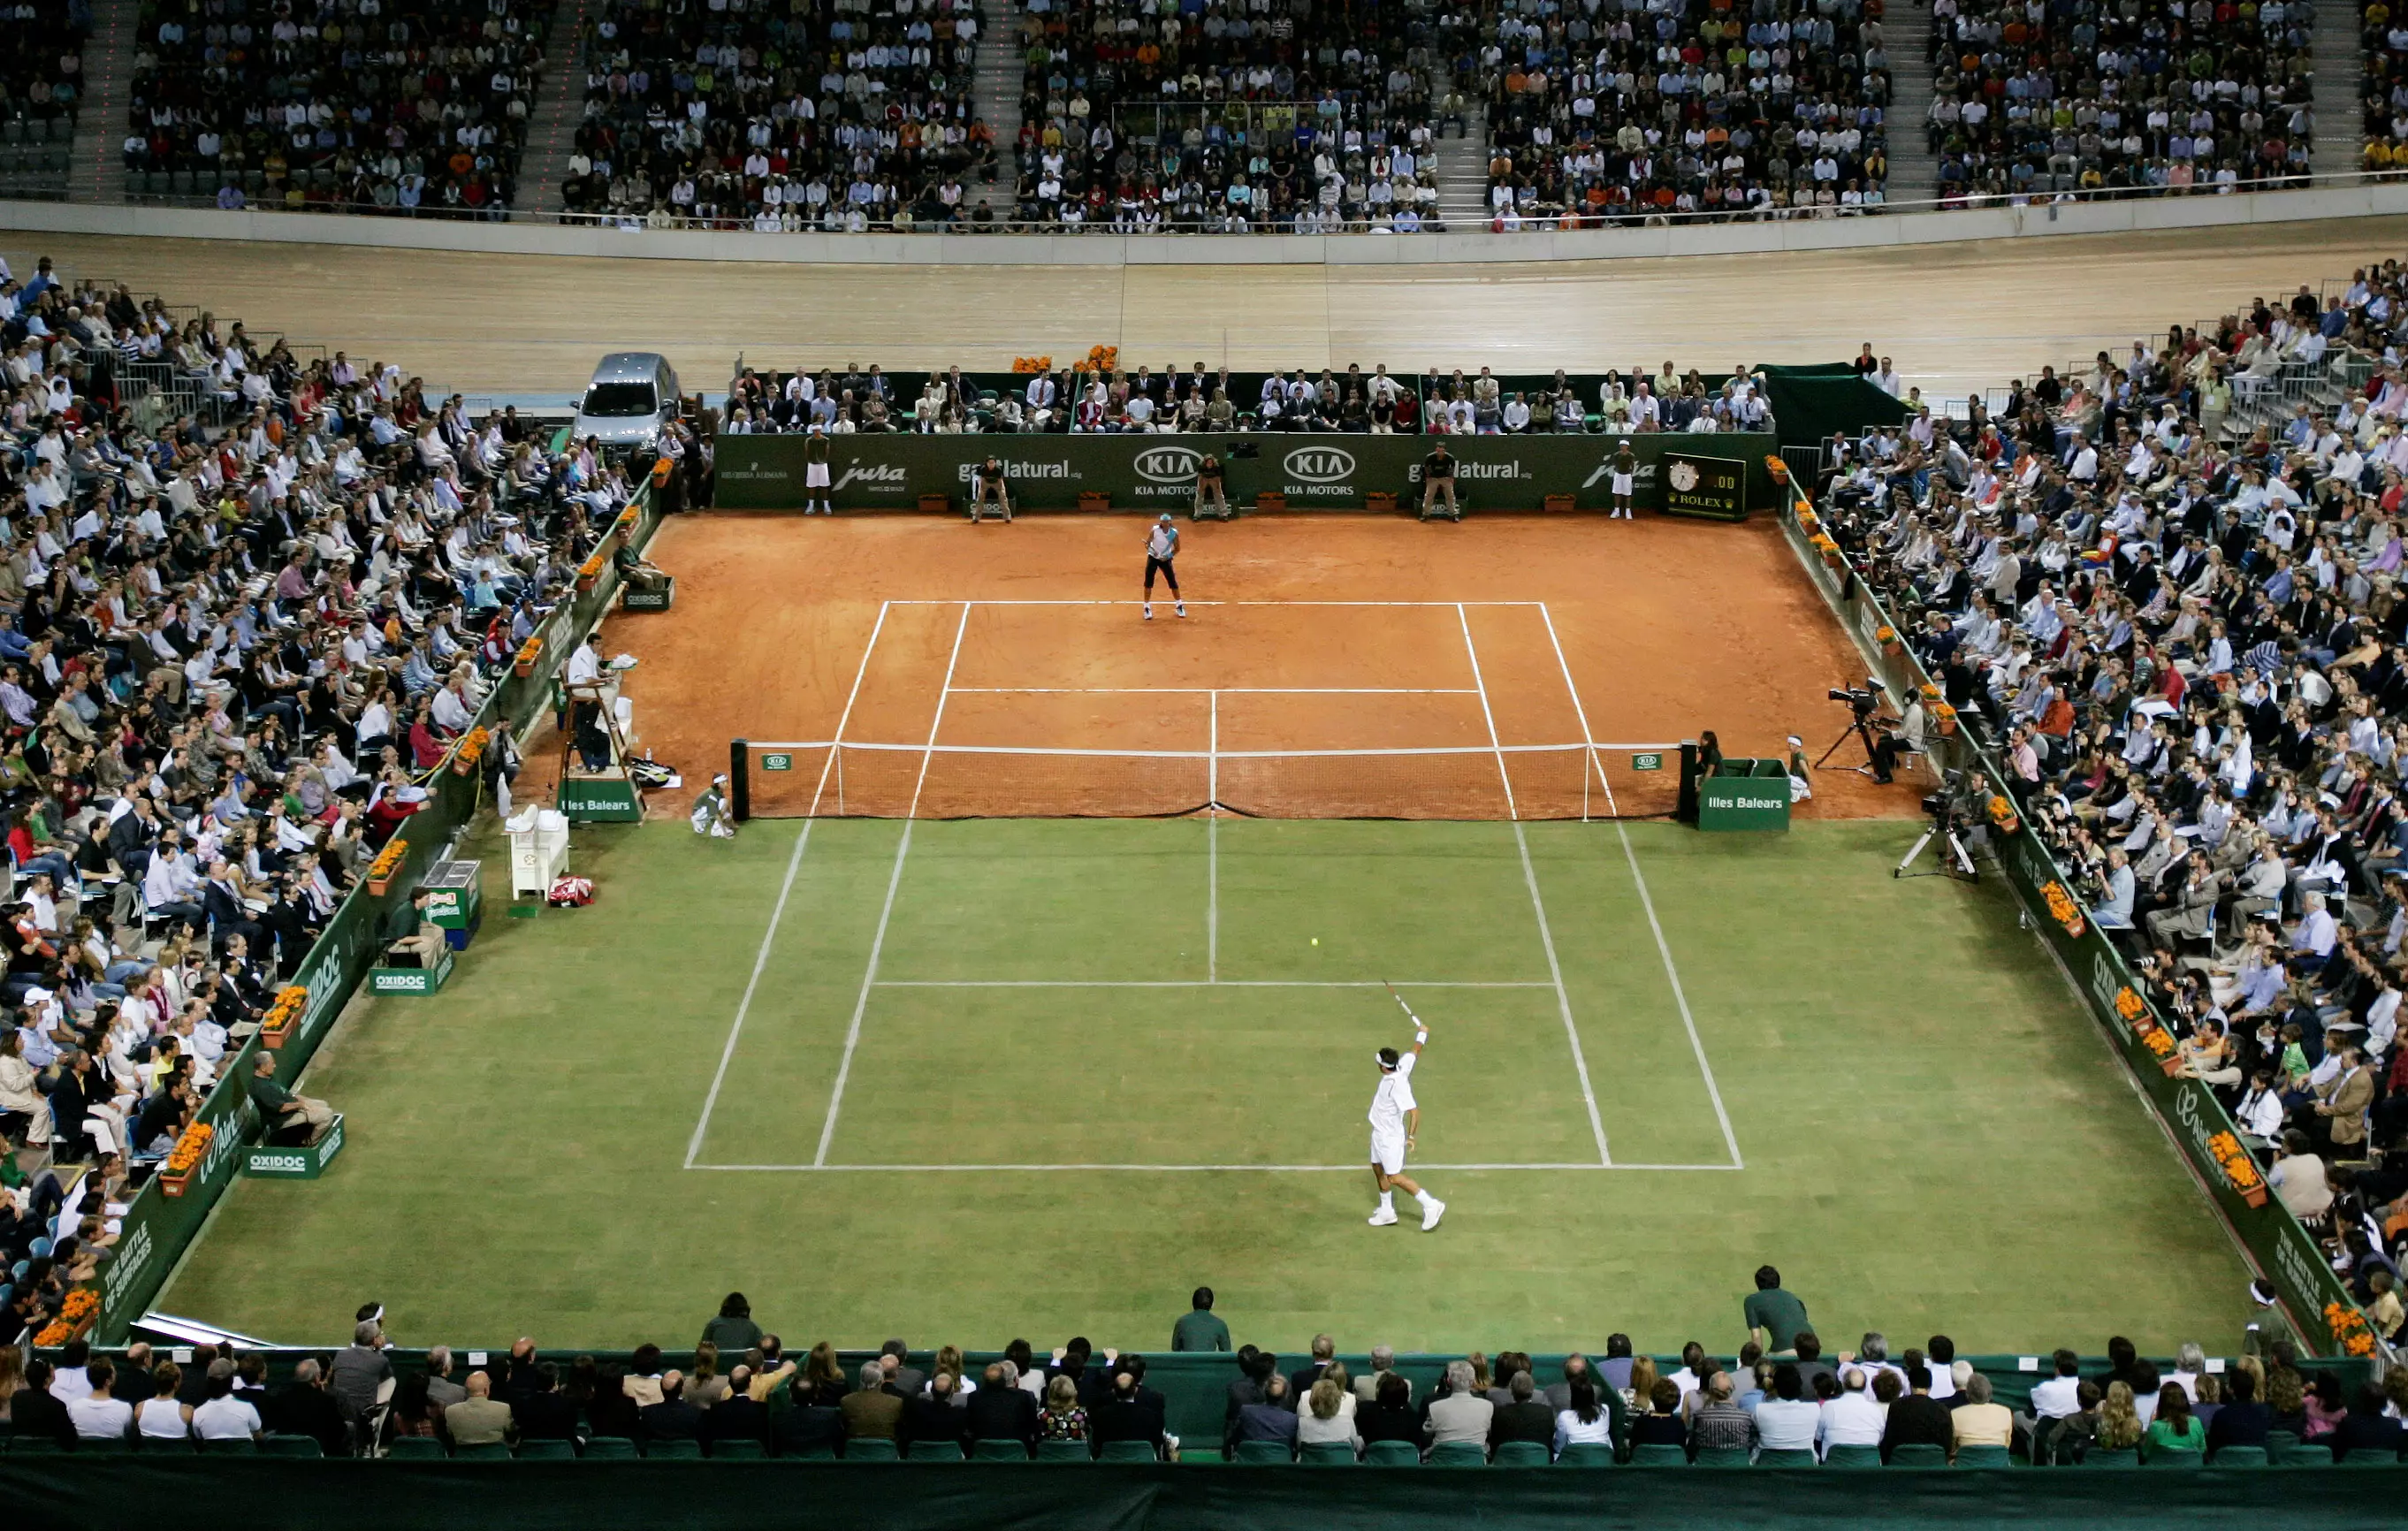 "Битва покрытий": матч Федерера и Надаля в 2007 году. Фото Reuters